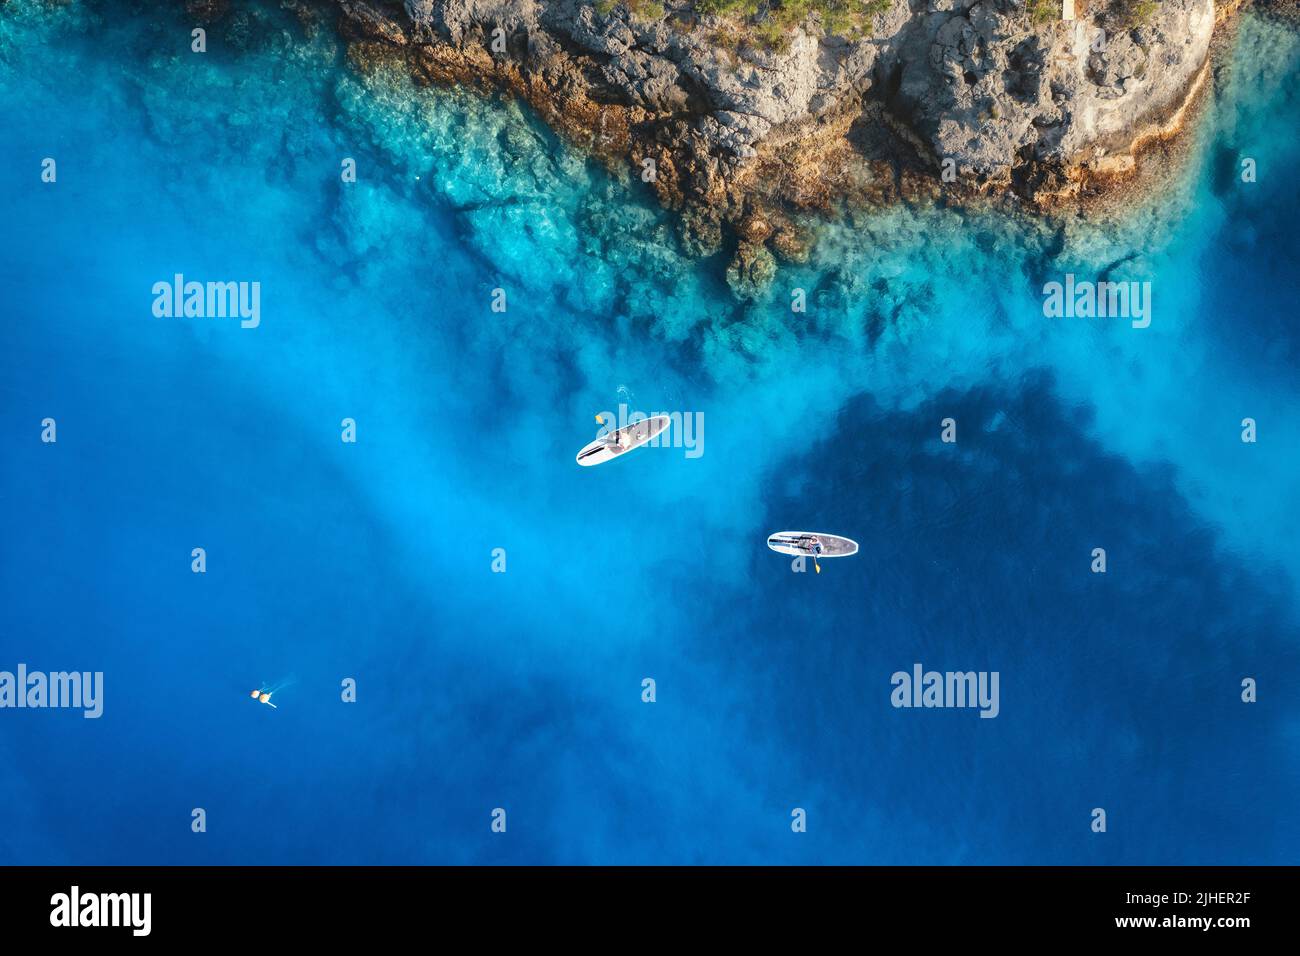 Vista aérea de la gente en tablas de sup. flotantes en el mar azul Foto de stock